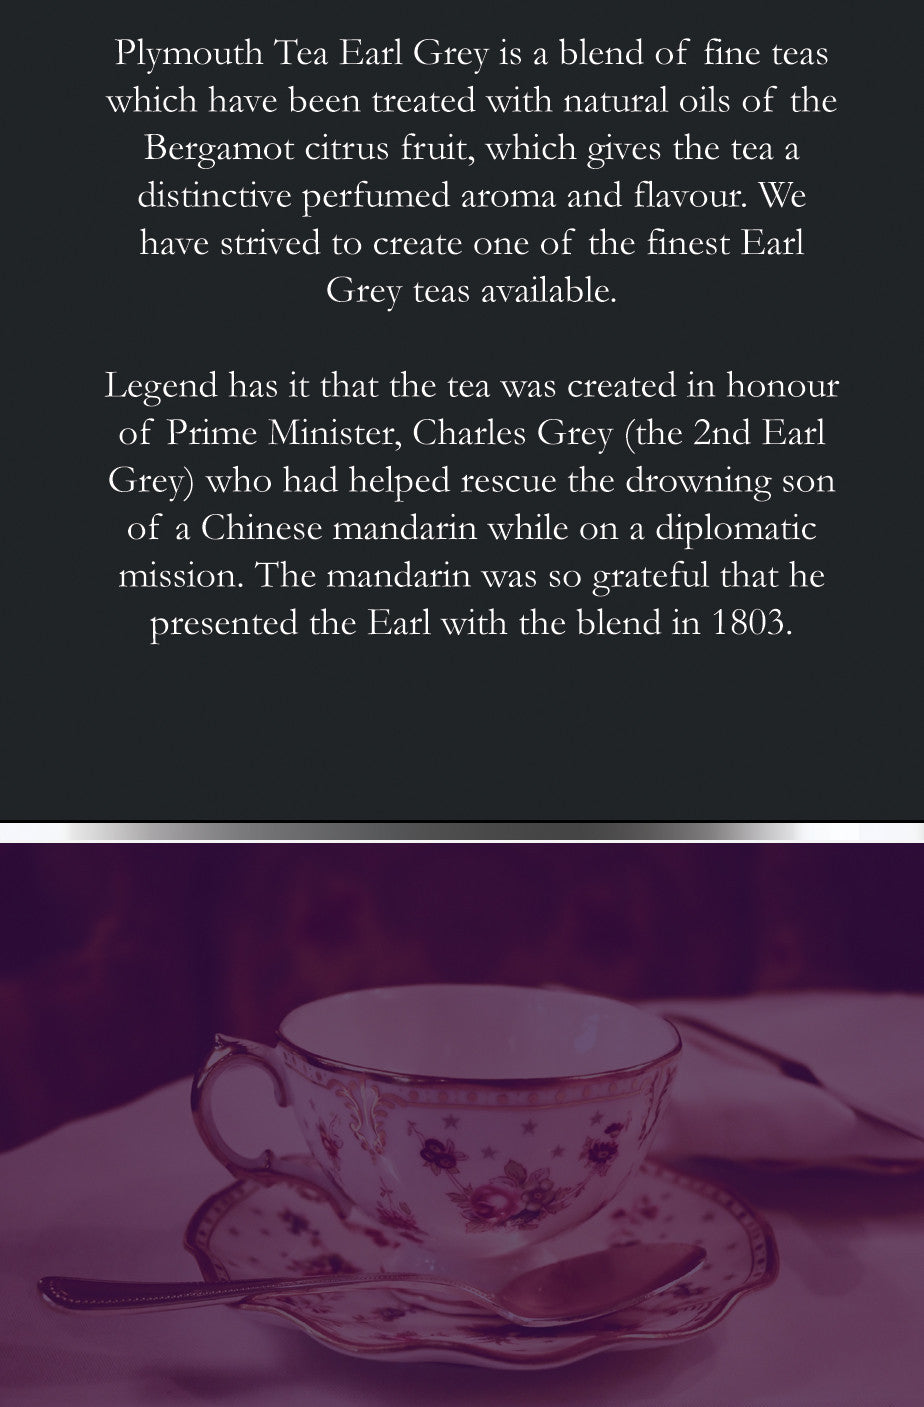 Chá Plymouth - Chá Luxo - Chá Earl Grey - Voltar